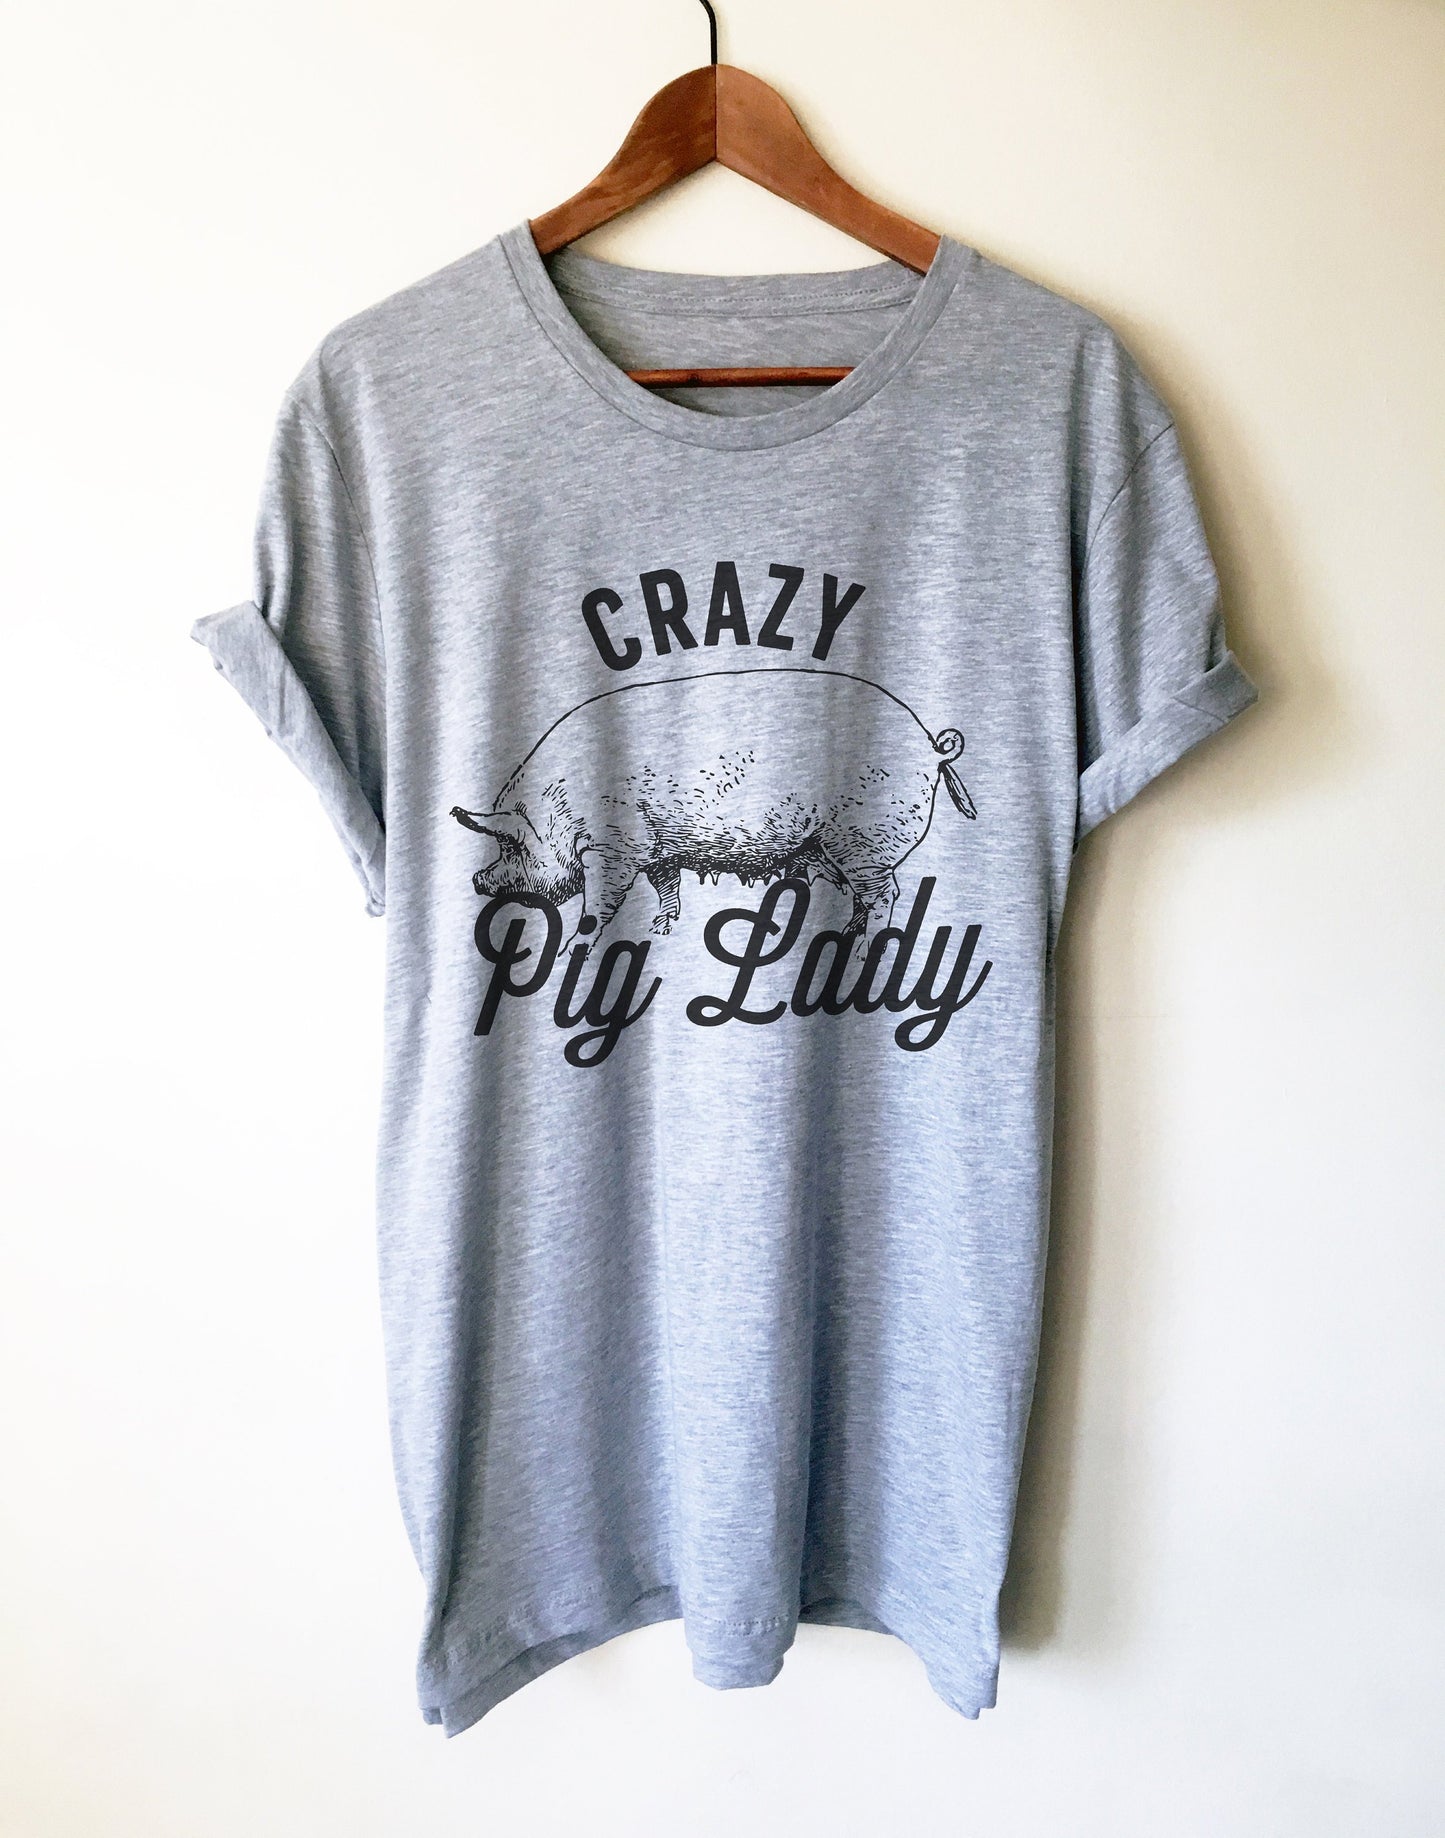 Crazy Pig Lady Unisex Shirt - Pig